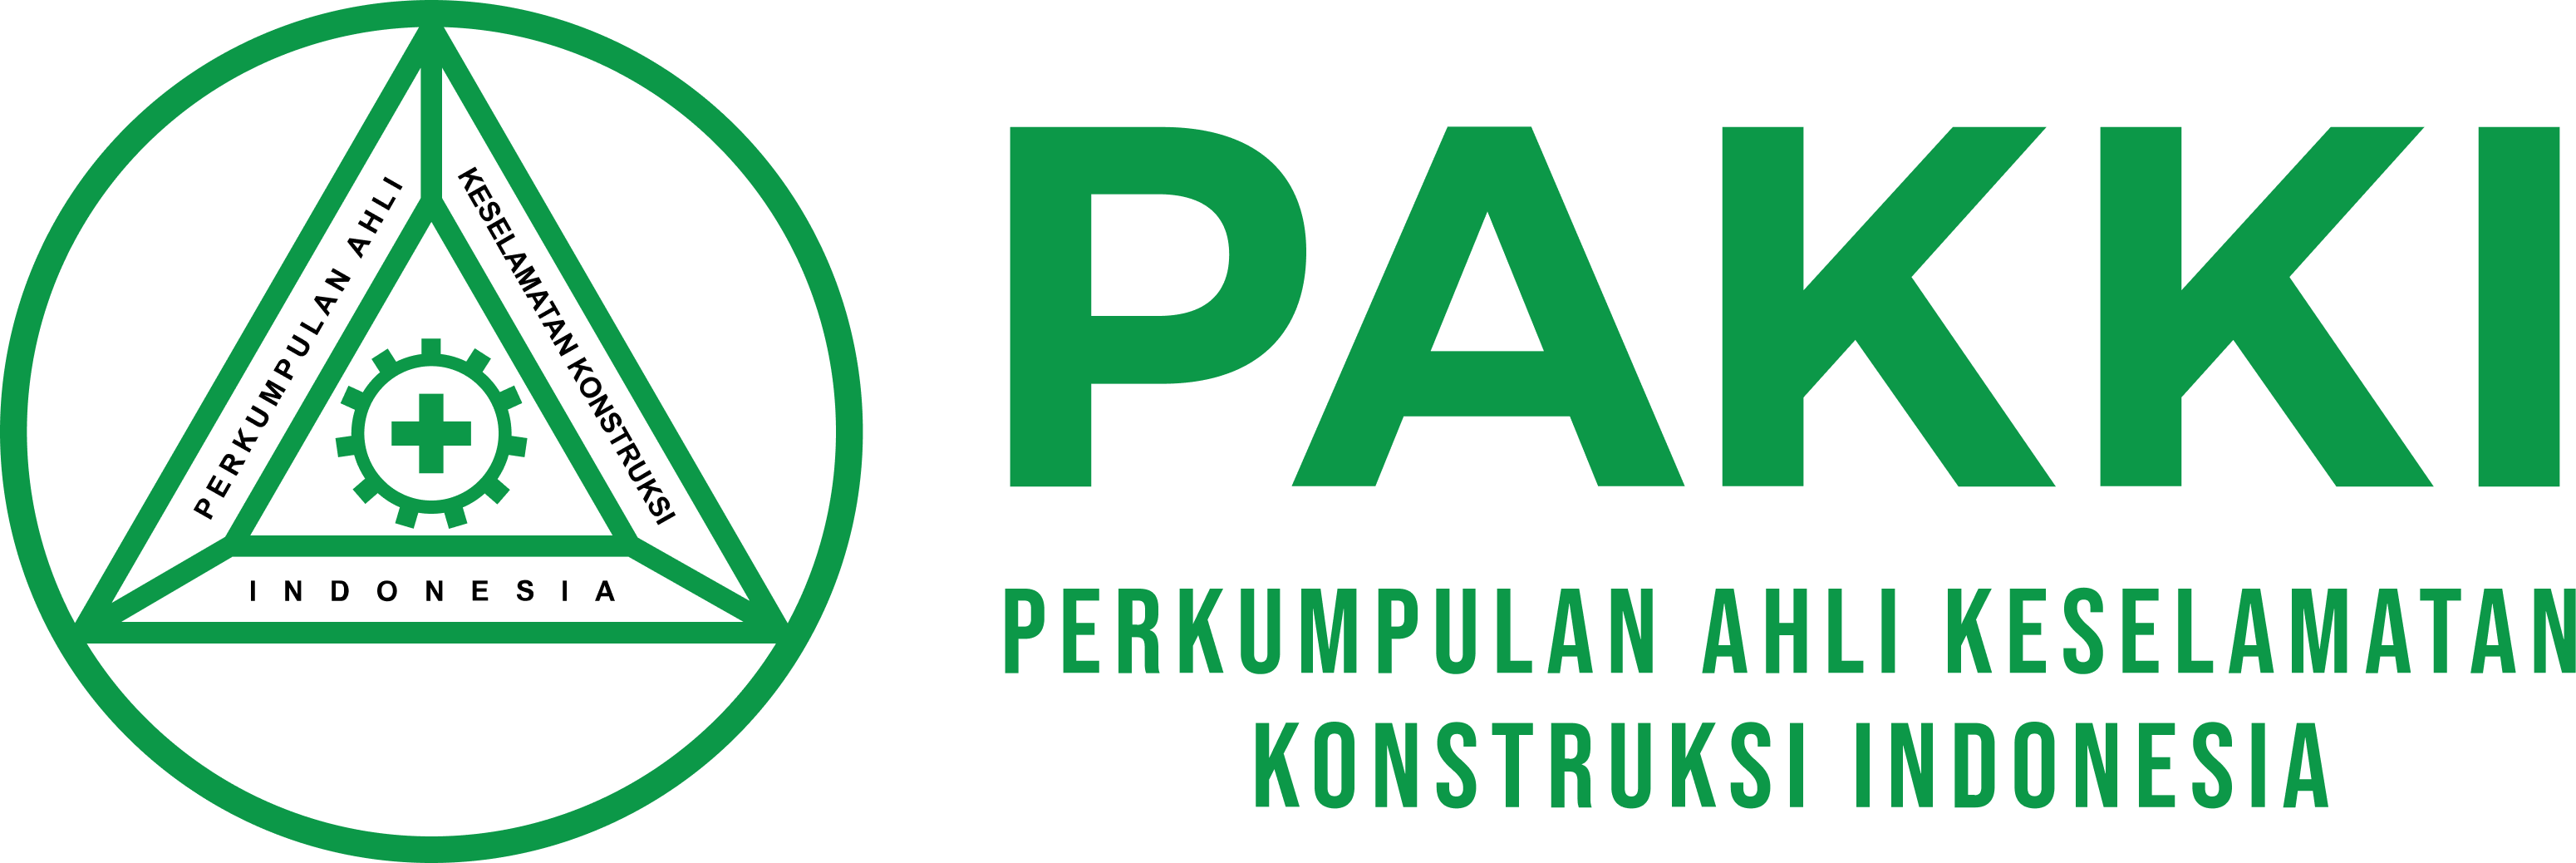 Logo PAKKI